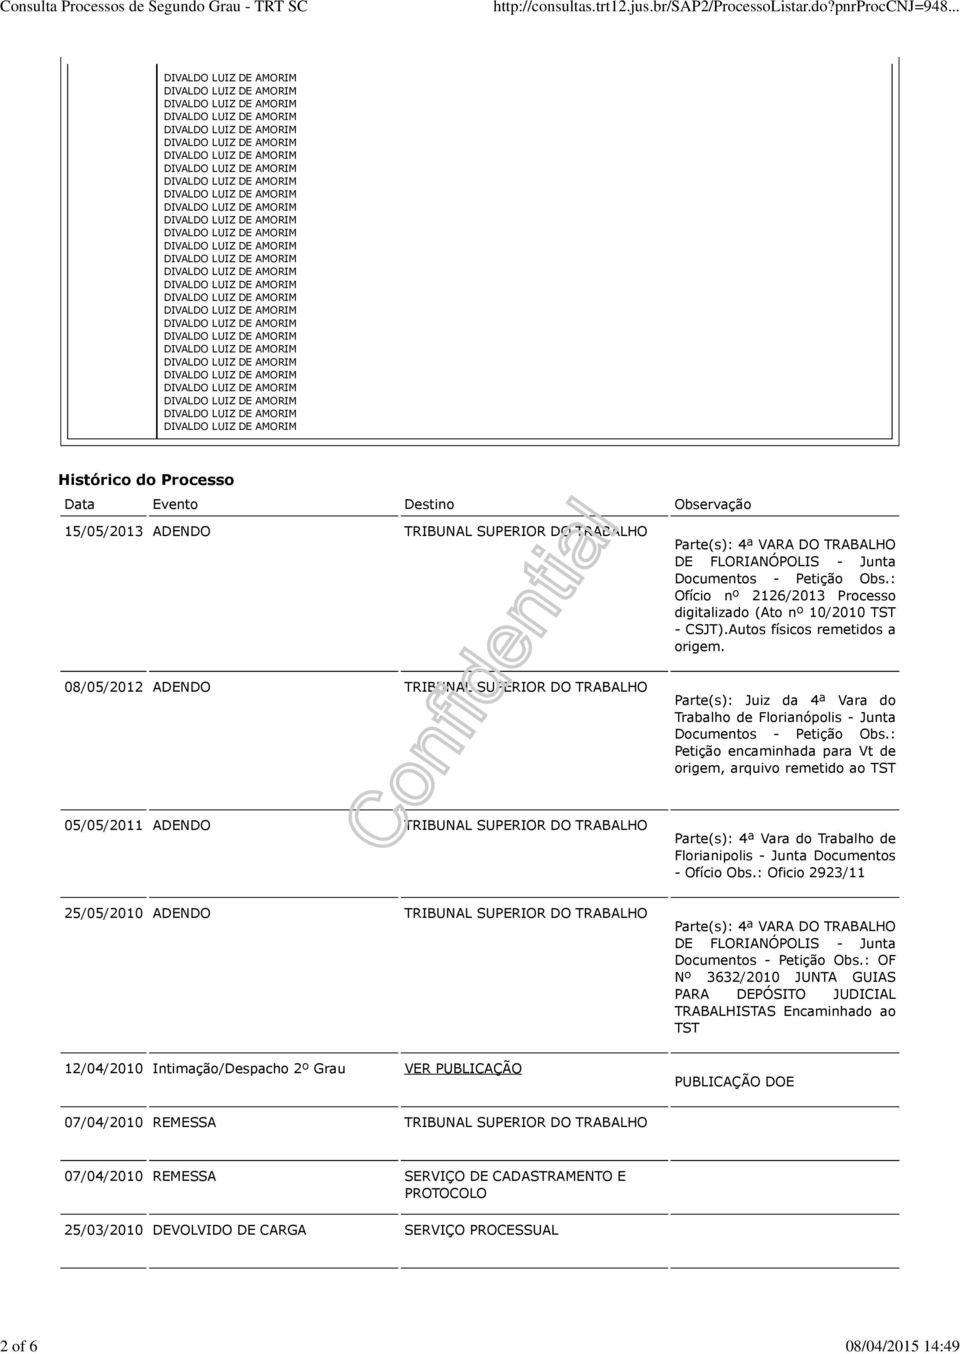 08/05/2012 ADENDO SUPERIOR DO TRABALHO Parte(s): Juiz da 4ª Vara do Trabalho de Florianópolis - Junta Documentos - Petição Obs.